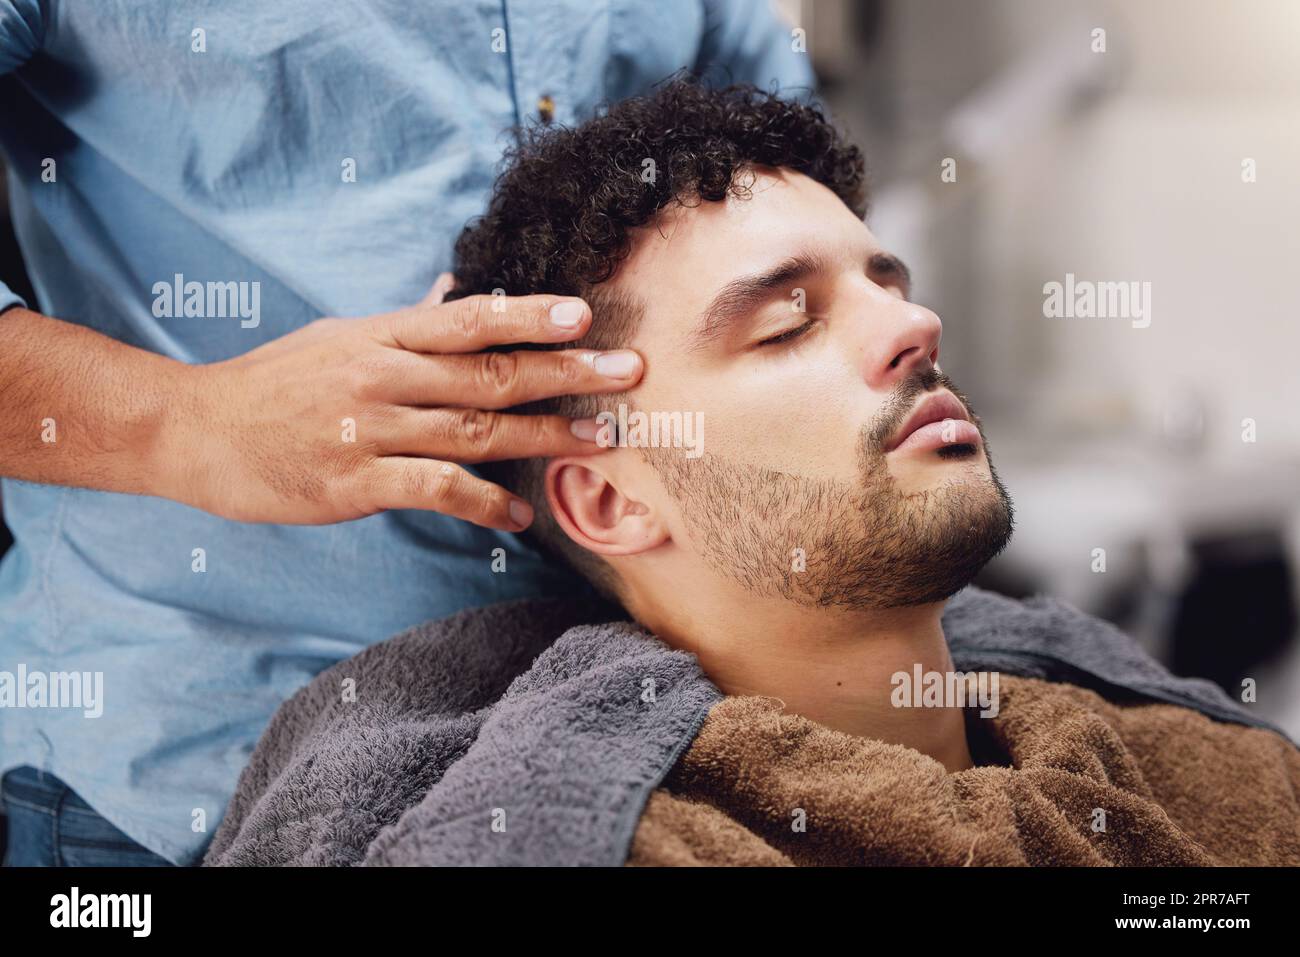 Nichts entspannender als der Barbier. Ein hübscher junger Mann, der von einem Barbier gepflegt wird. Stockfoto